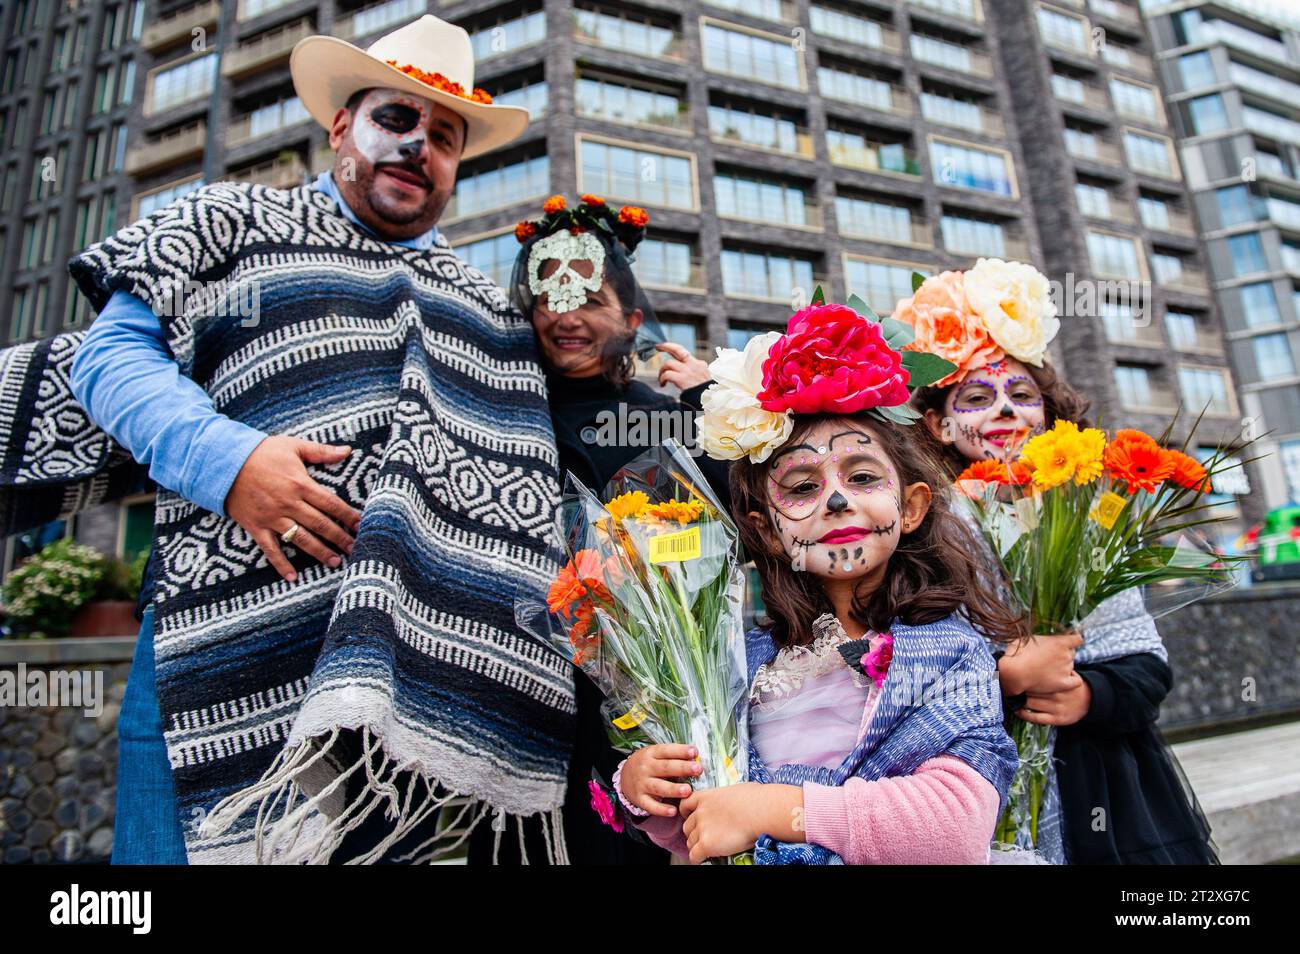 Una famiglia messicana viene vista posare indossando costumi messicani. Il Mexican Talent Network in collaborazione con l'Ambasciata del Messico nei Paesi Bassi ha celebrato il giorno dei morti. Dieci giorni prima della celebrazione ufficiale gli organizzatori invitano la comunità messicana nei Paesi Bassi e tutte le persone interessate a celebrare il giorno dei morti. Il giorno dei morti, o "Día de los Muertos" in spagnolo, è una tradizionale visita messicana in cui le famiglie onorano e ricordano i propri cari deceduti, credendo che gli spiriti tornino nel mondo dei vivi in questo periodo. Gente vestita da Catrina Foto Stock